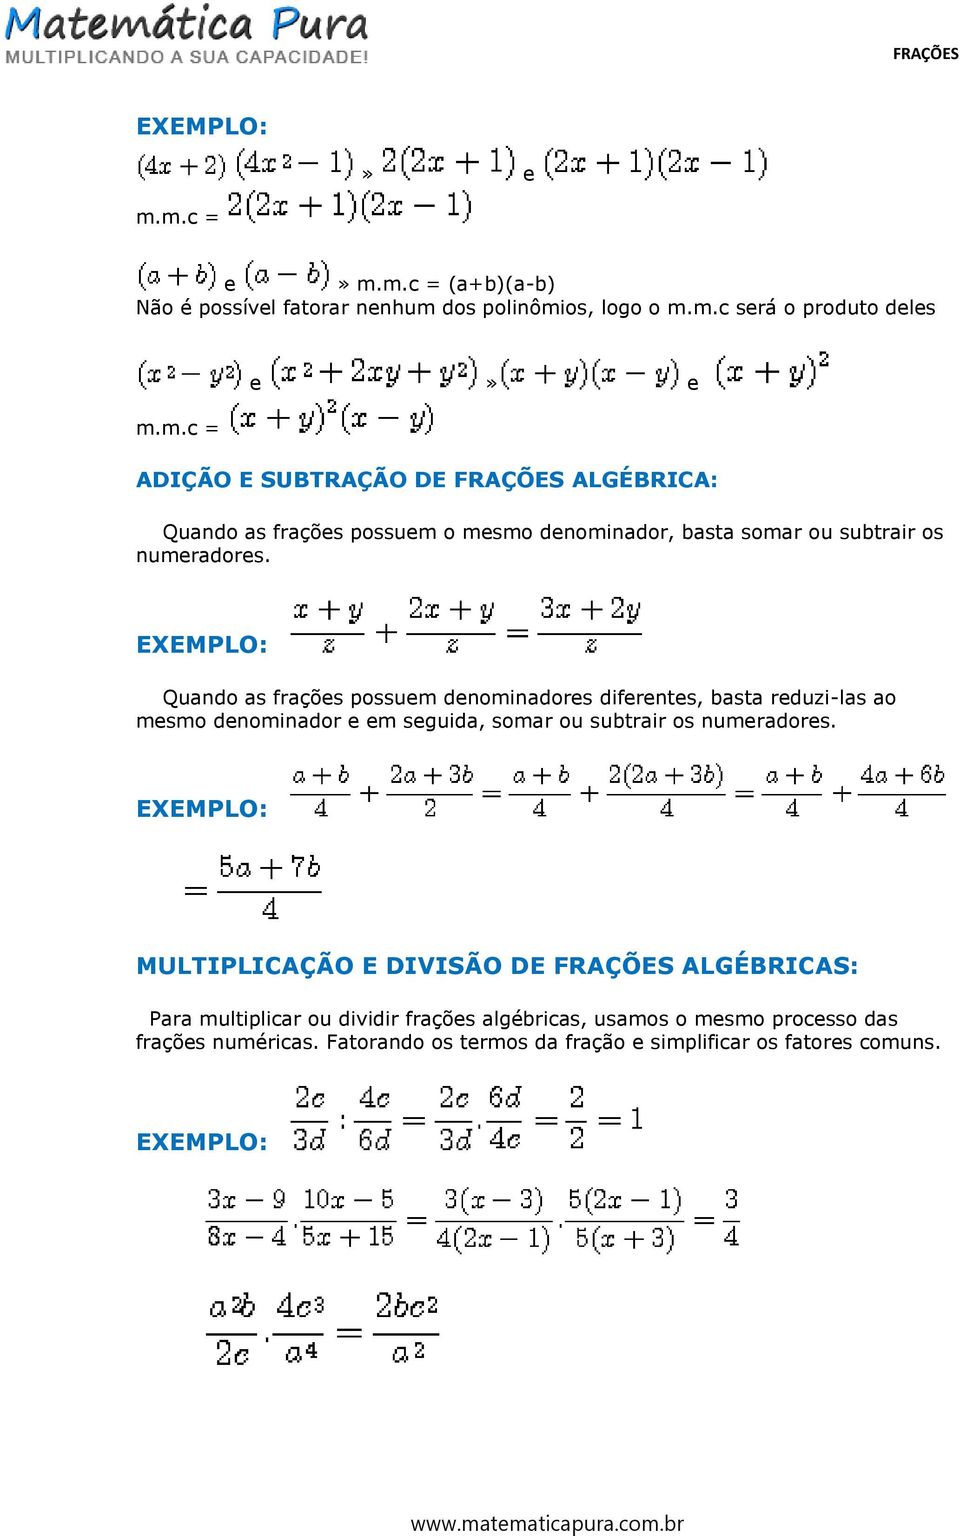 MULTIPLICAÇÃO E DIVISÃO DE FRAÇÕES ALGÉBRICAS: Para multiplicar ou dividir frações algébricas, usamos o mesmo processo das frações numéricas.